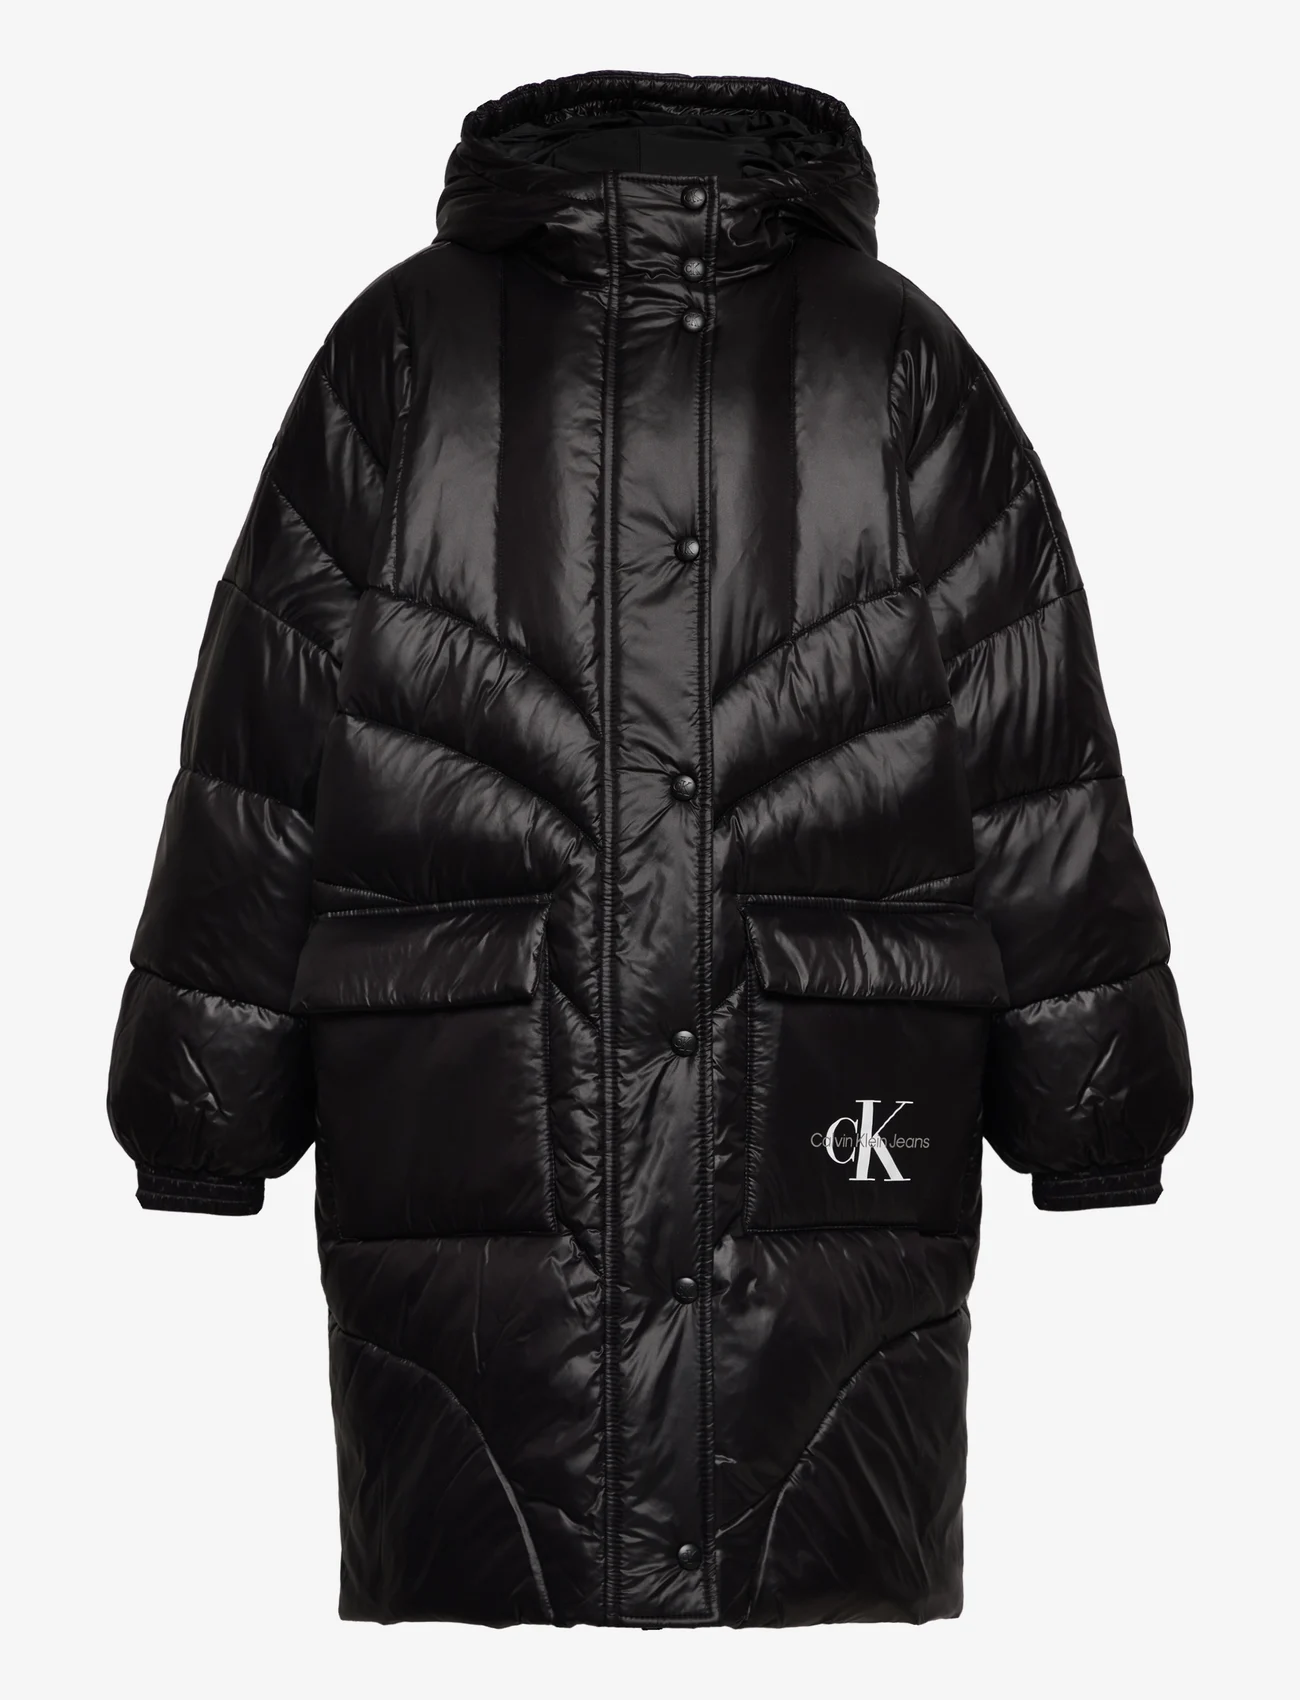 Calvin Klein - OVERSIZED DUVET PADDED COAT - daunen-& steppjacken - ck black - 0